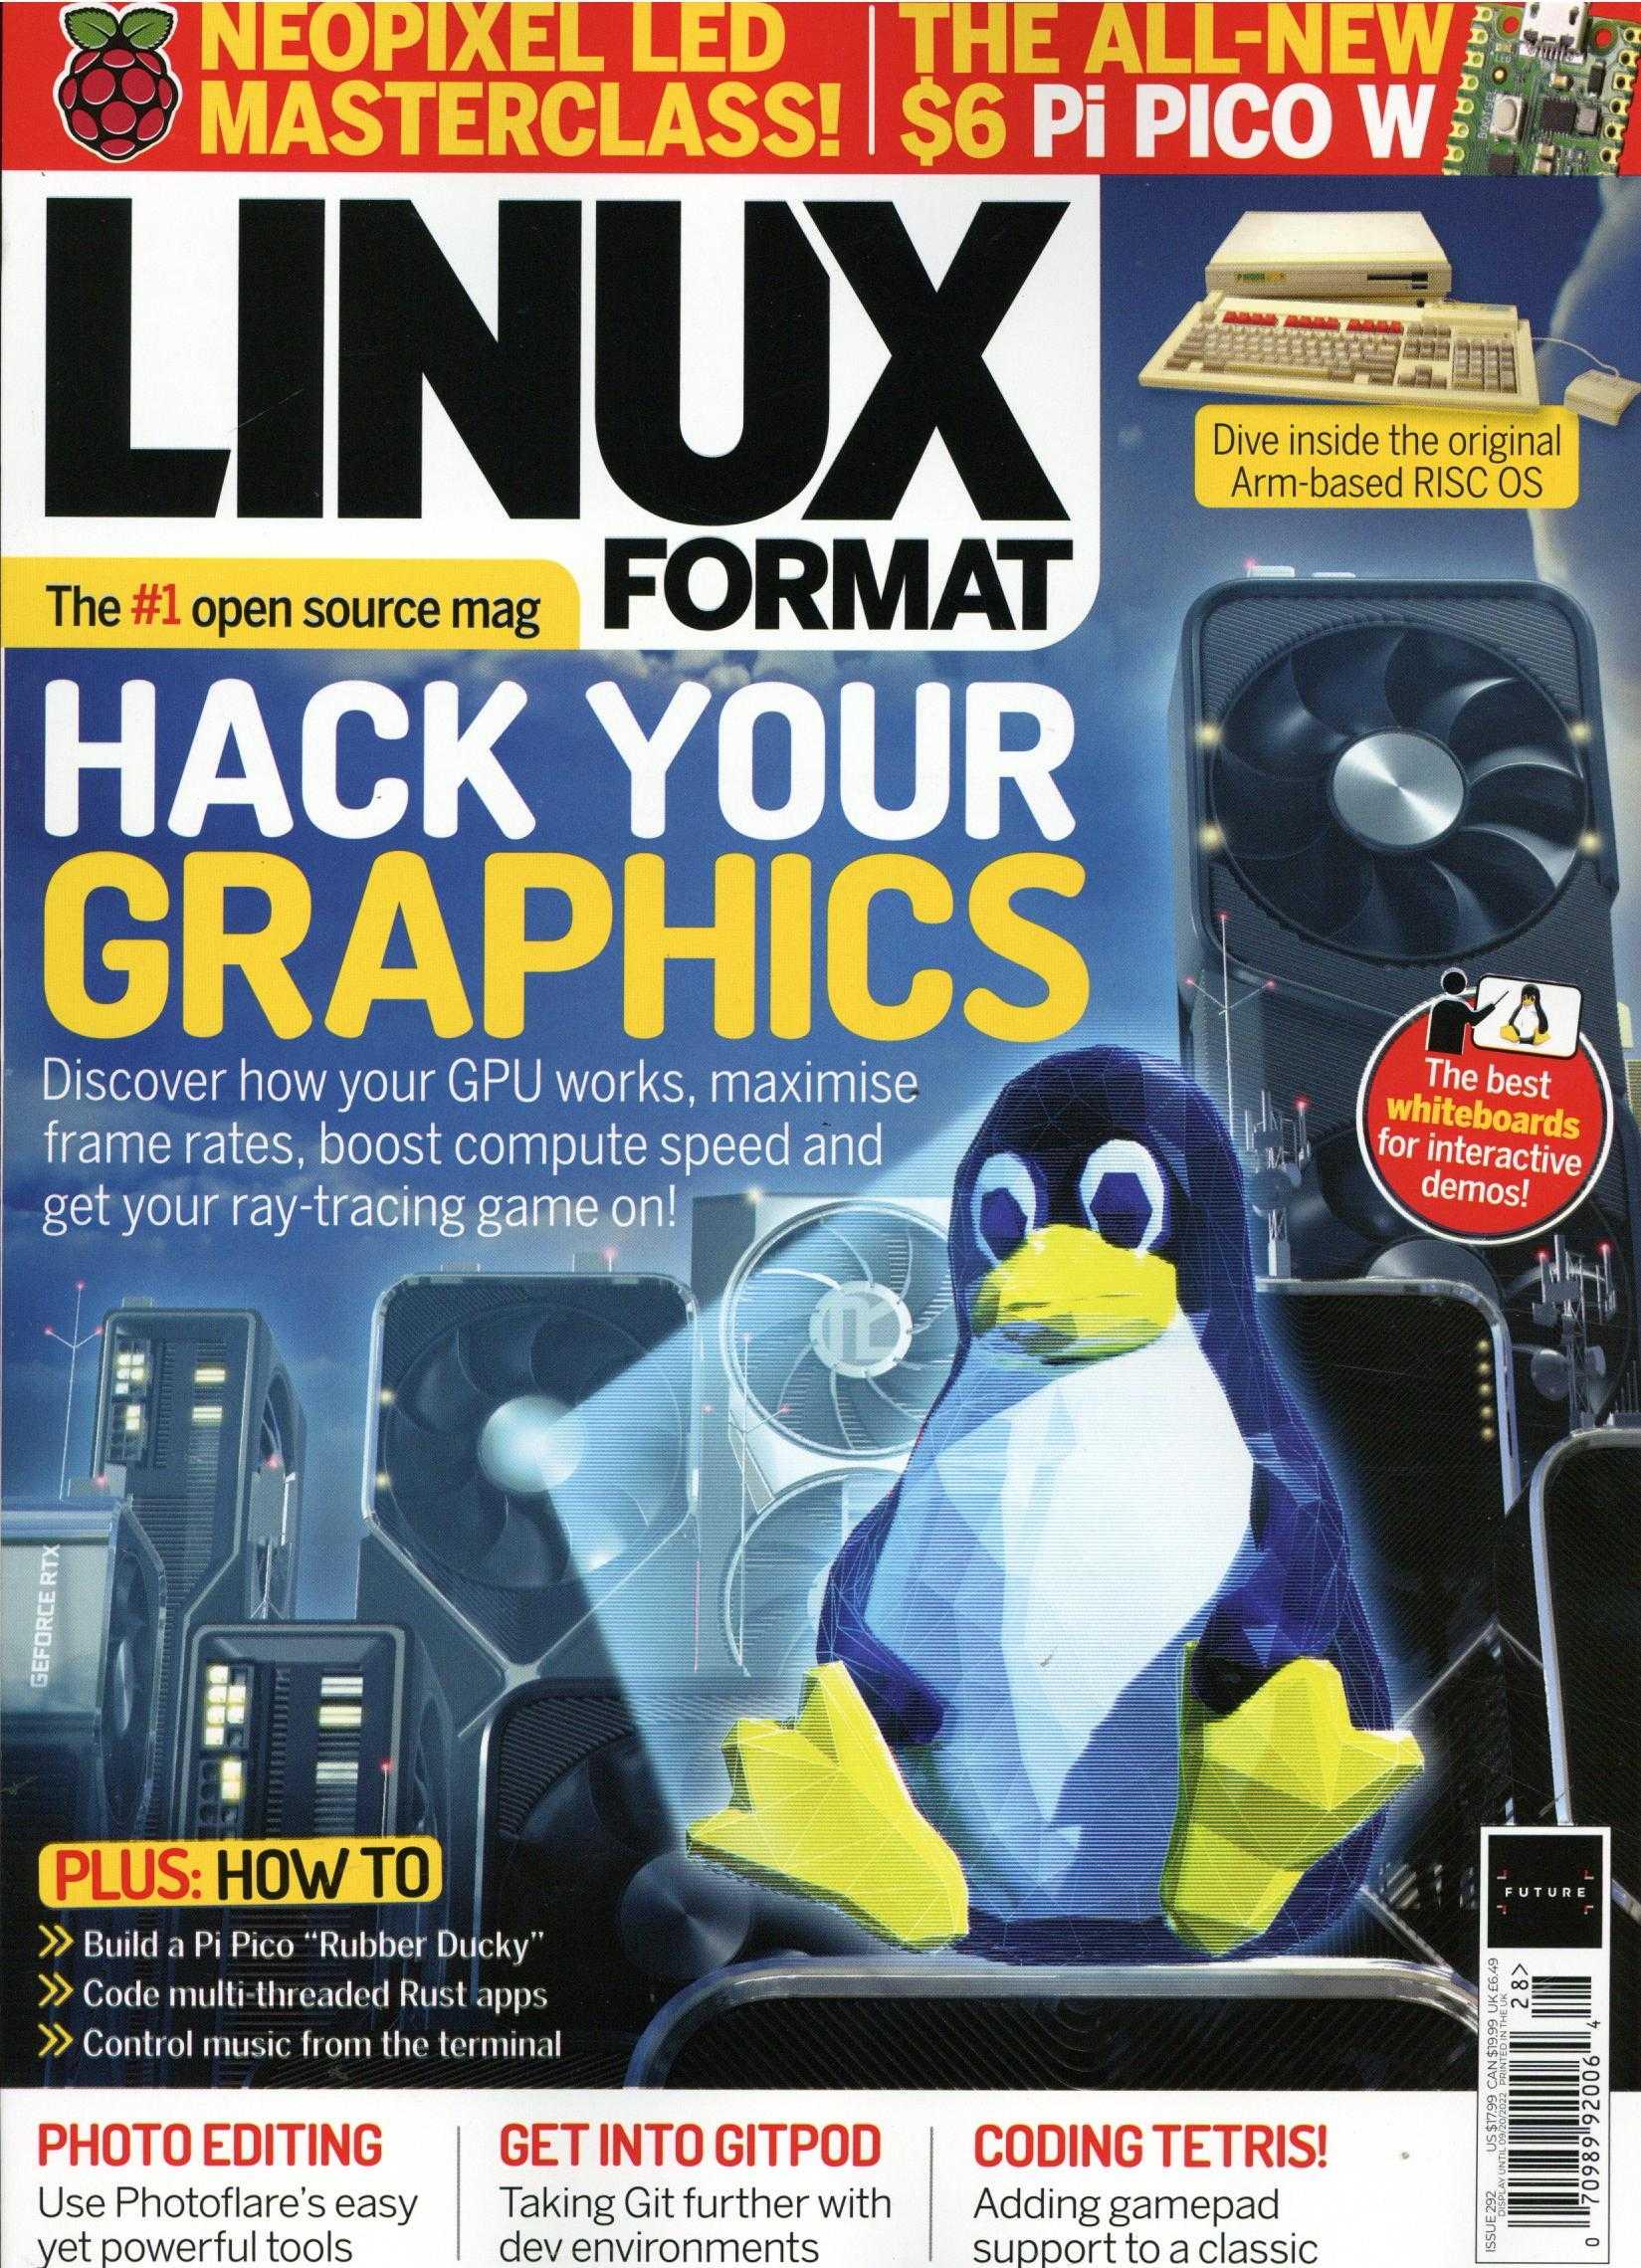 Linux Format